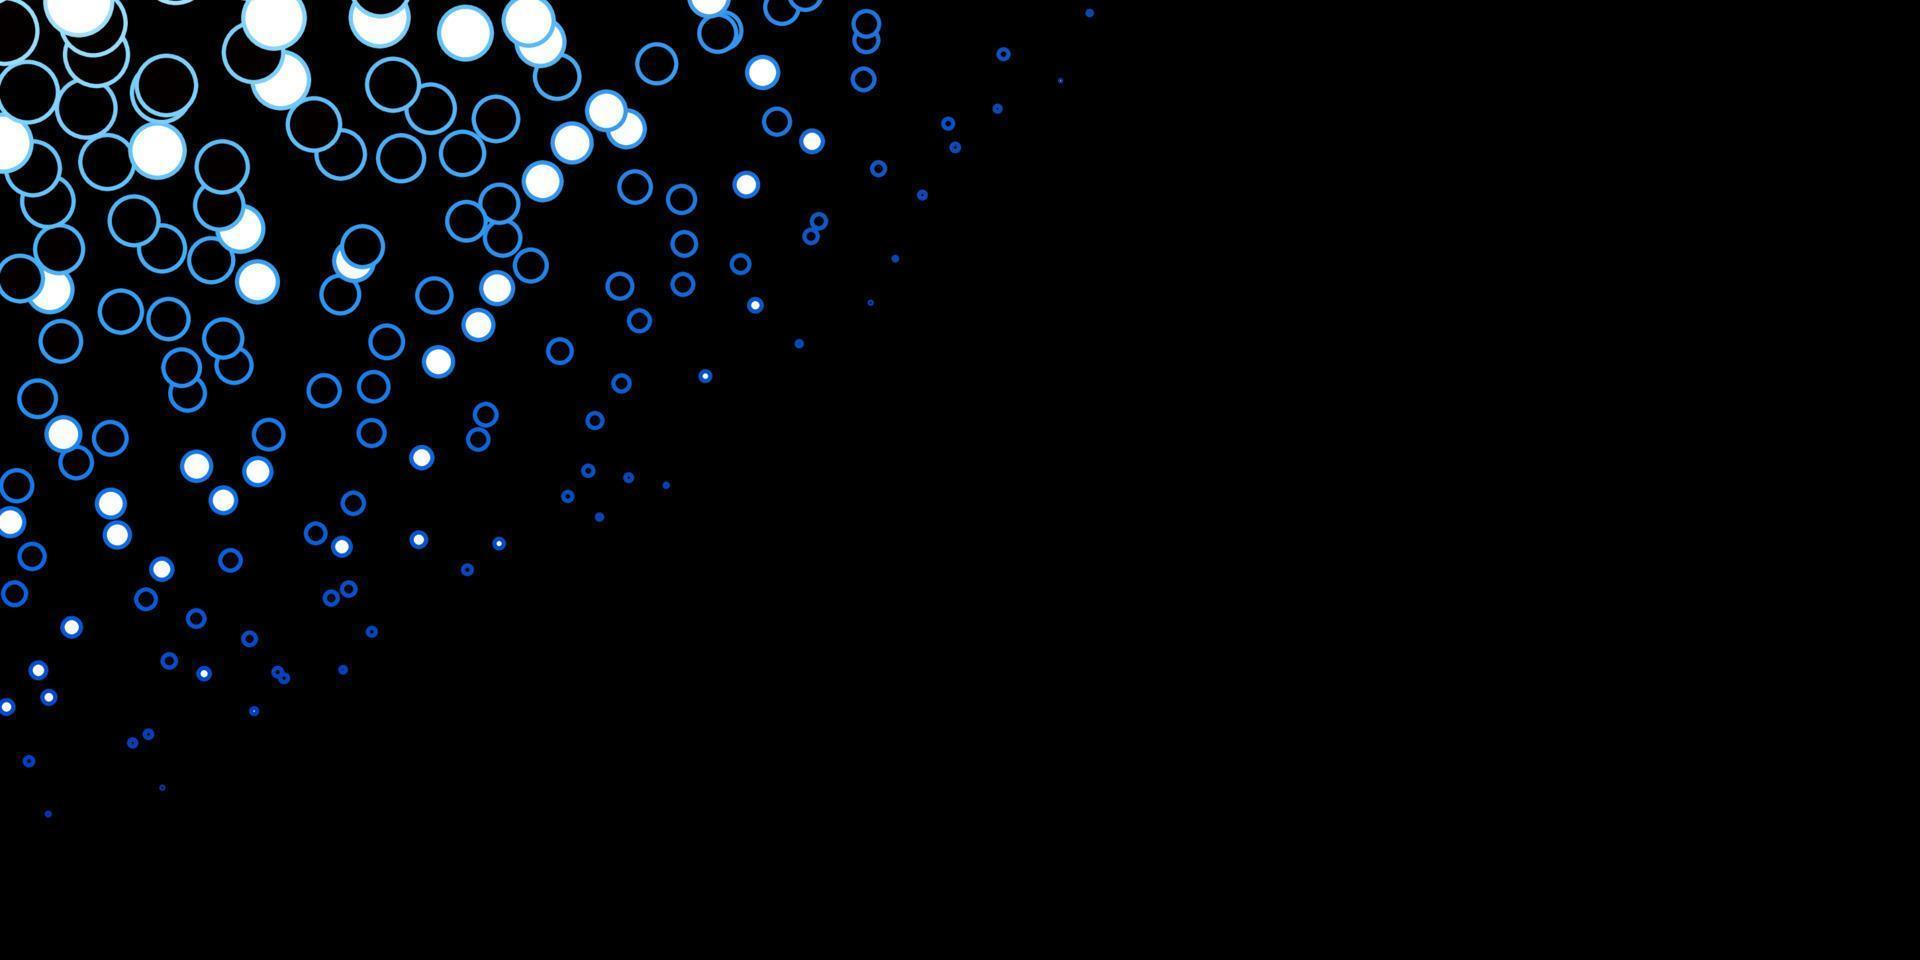 fundo vector azul escuro com círculos.